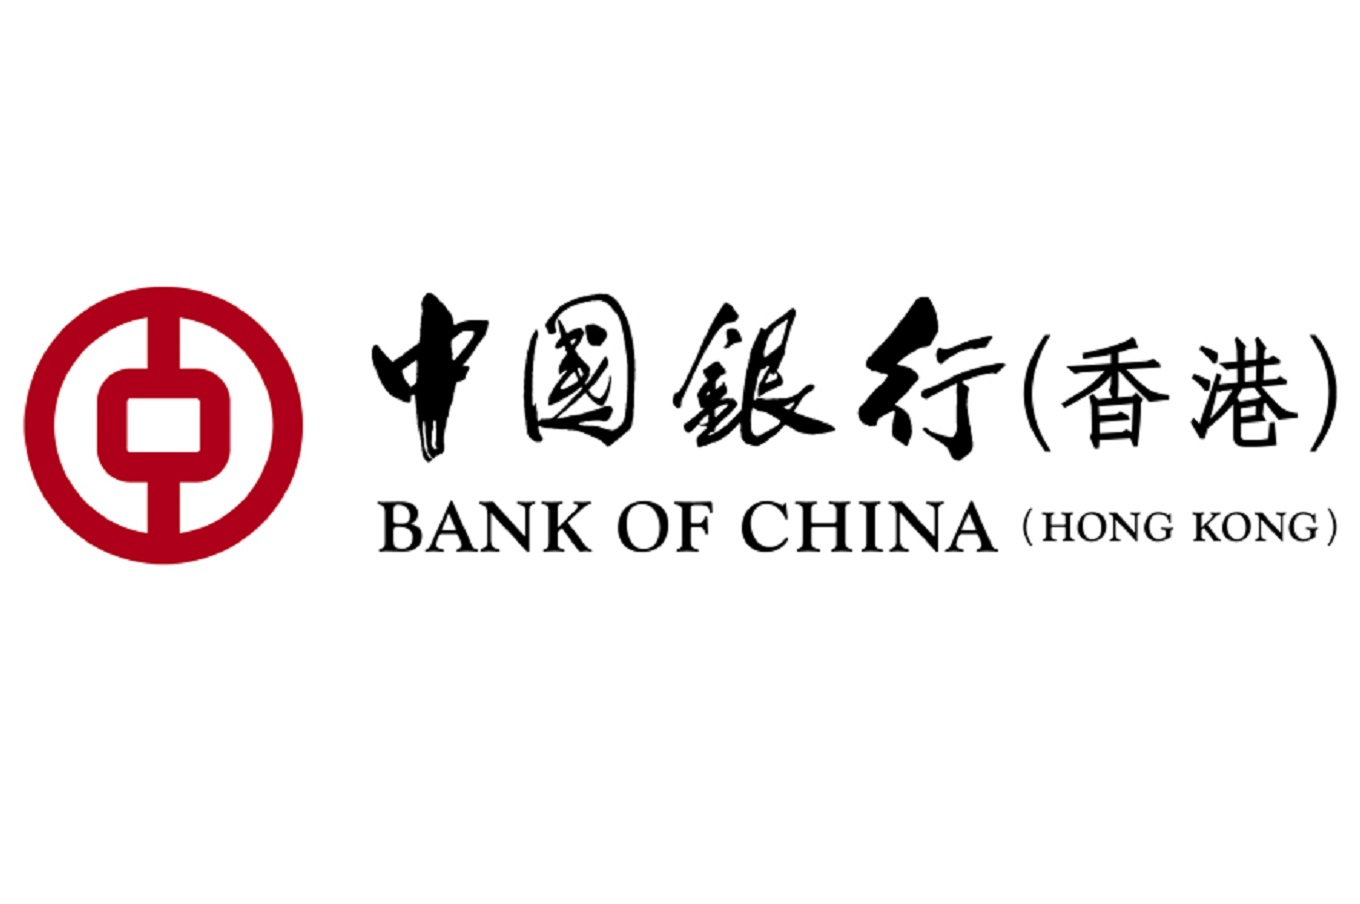 Bank Of China (Hong Kong) │ Elements 圓方